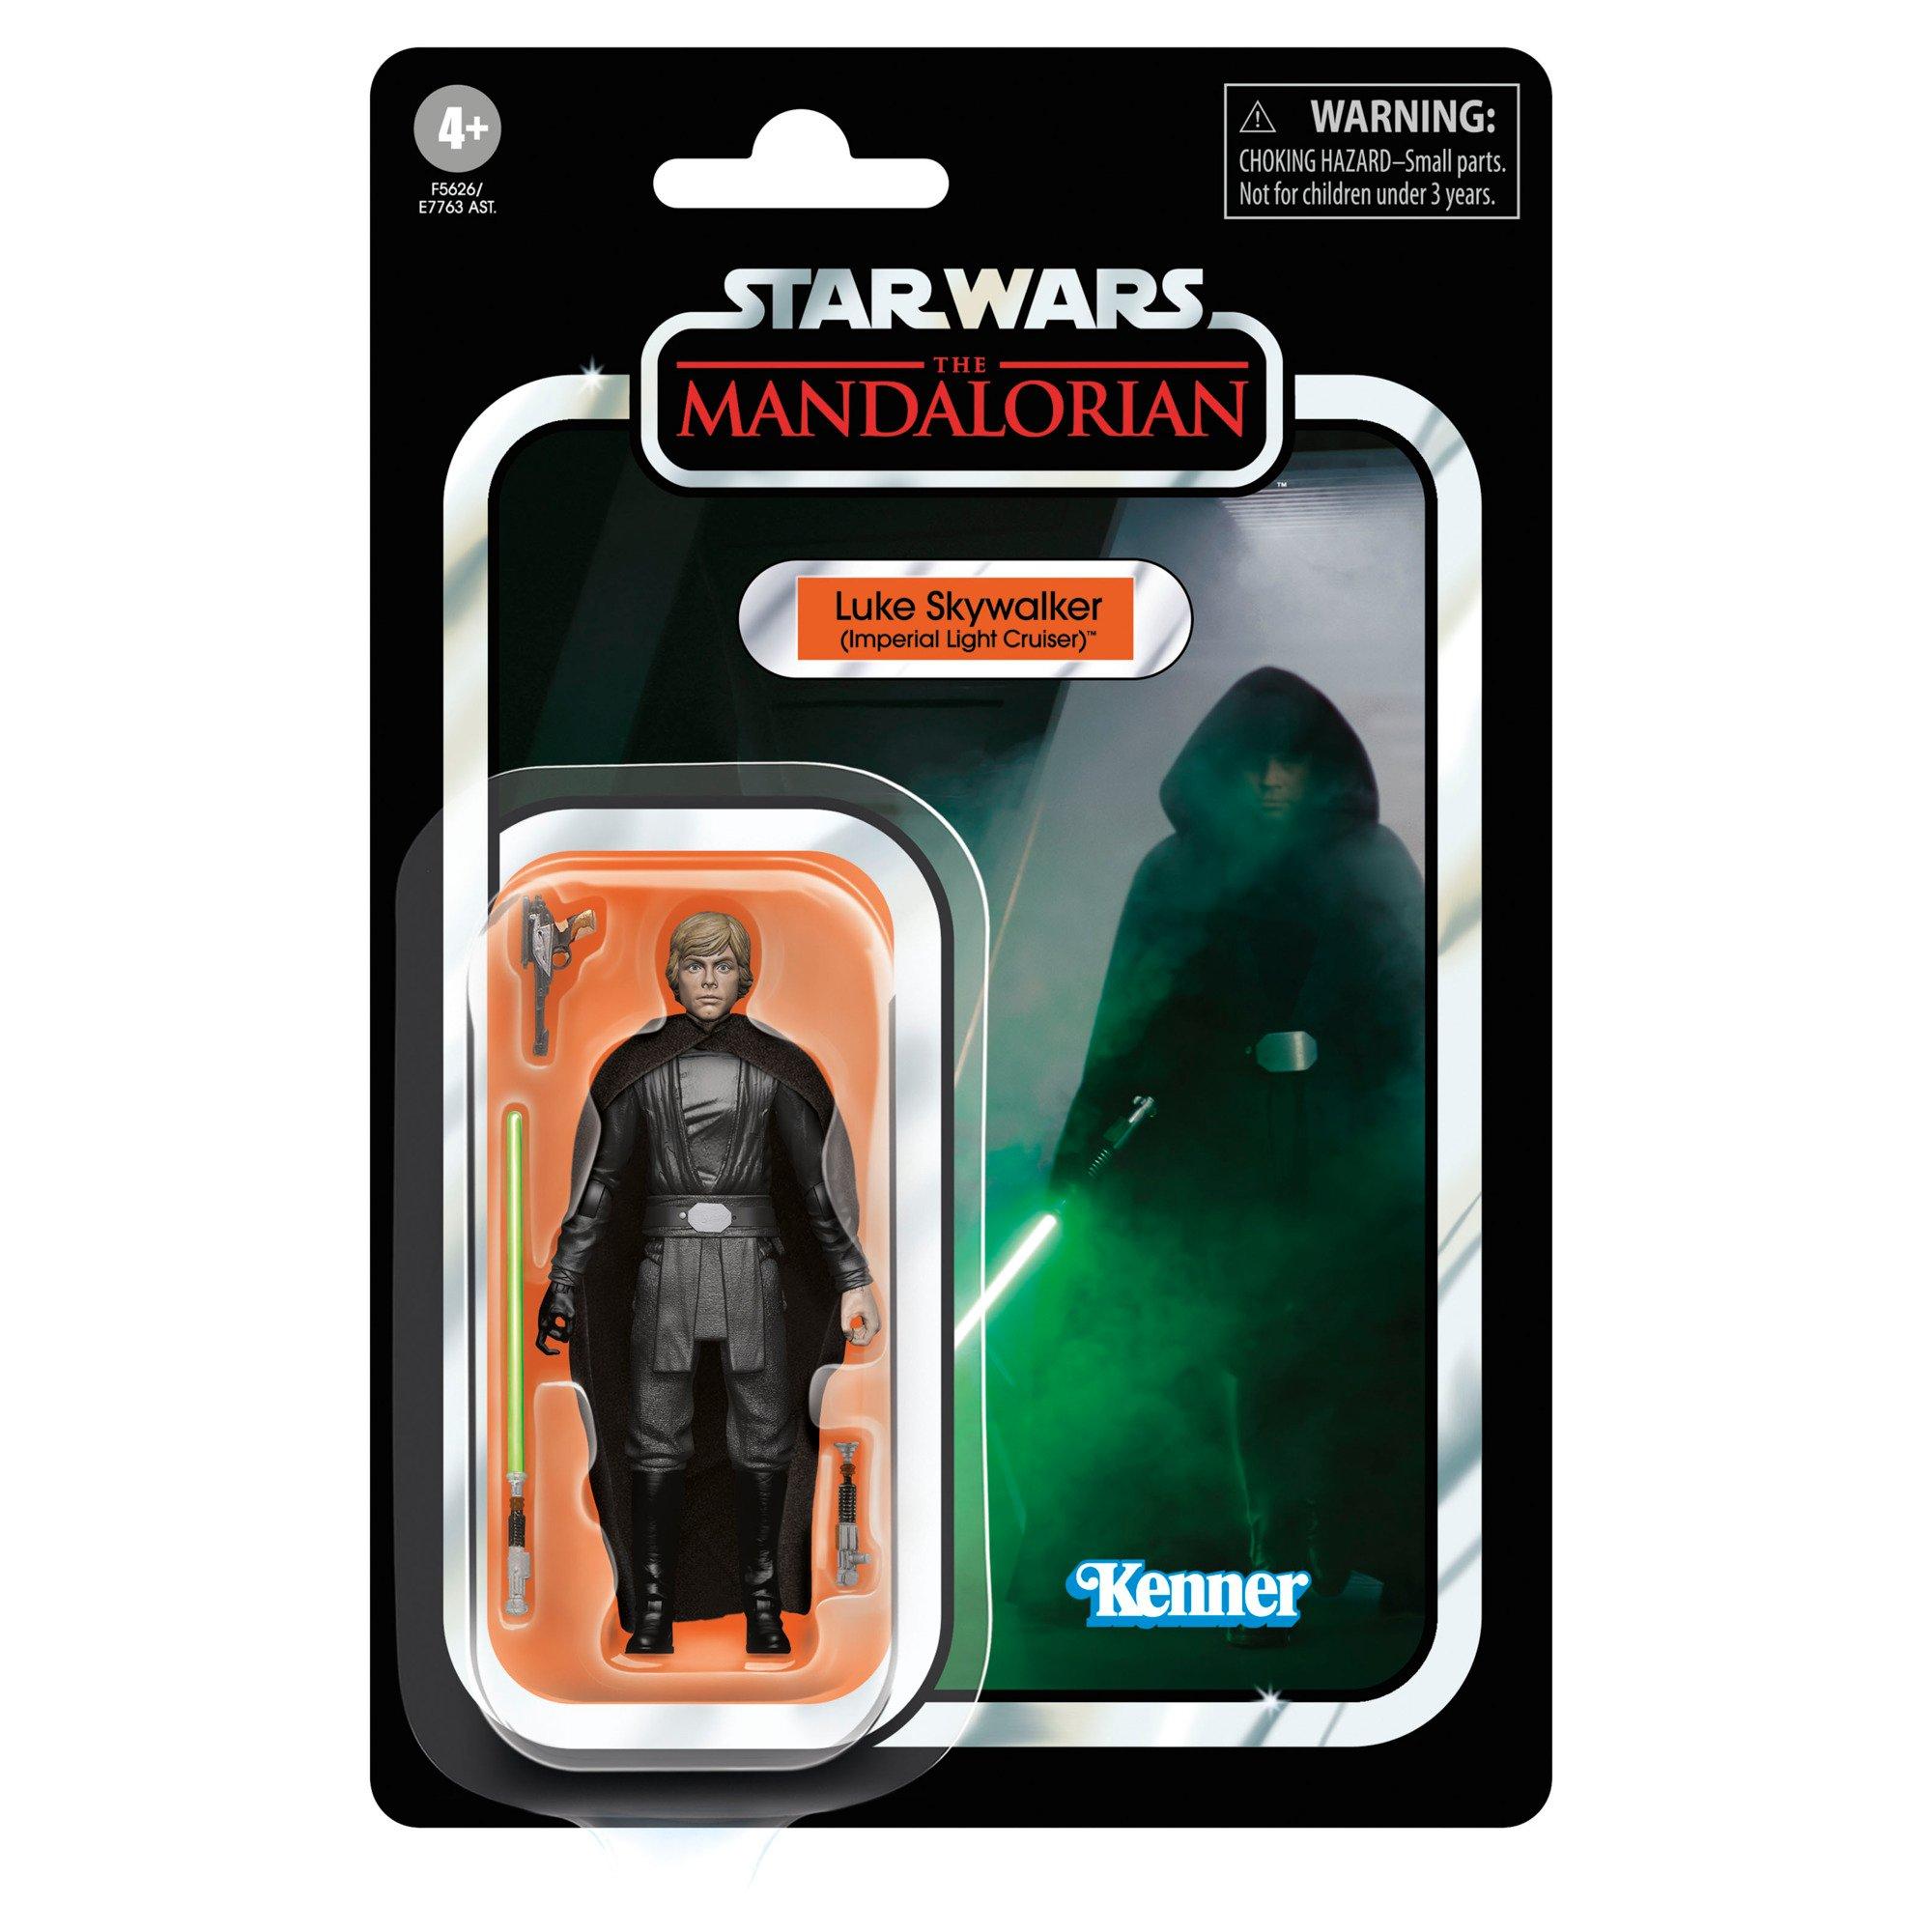 Hasbro Star Wars: The Mandalorian Luke Skywalker (Imperial Light Cruiser) Action Figure